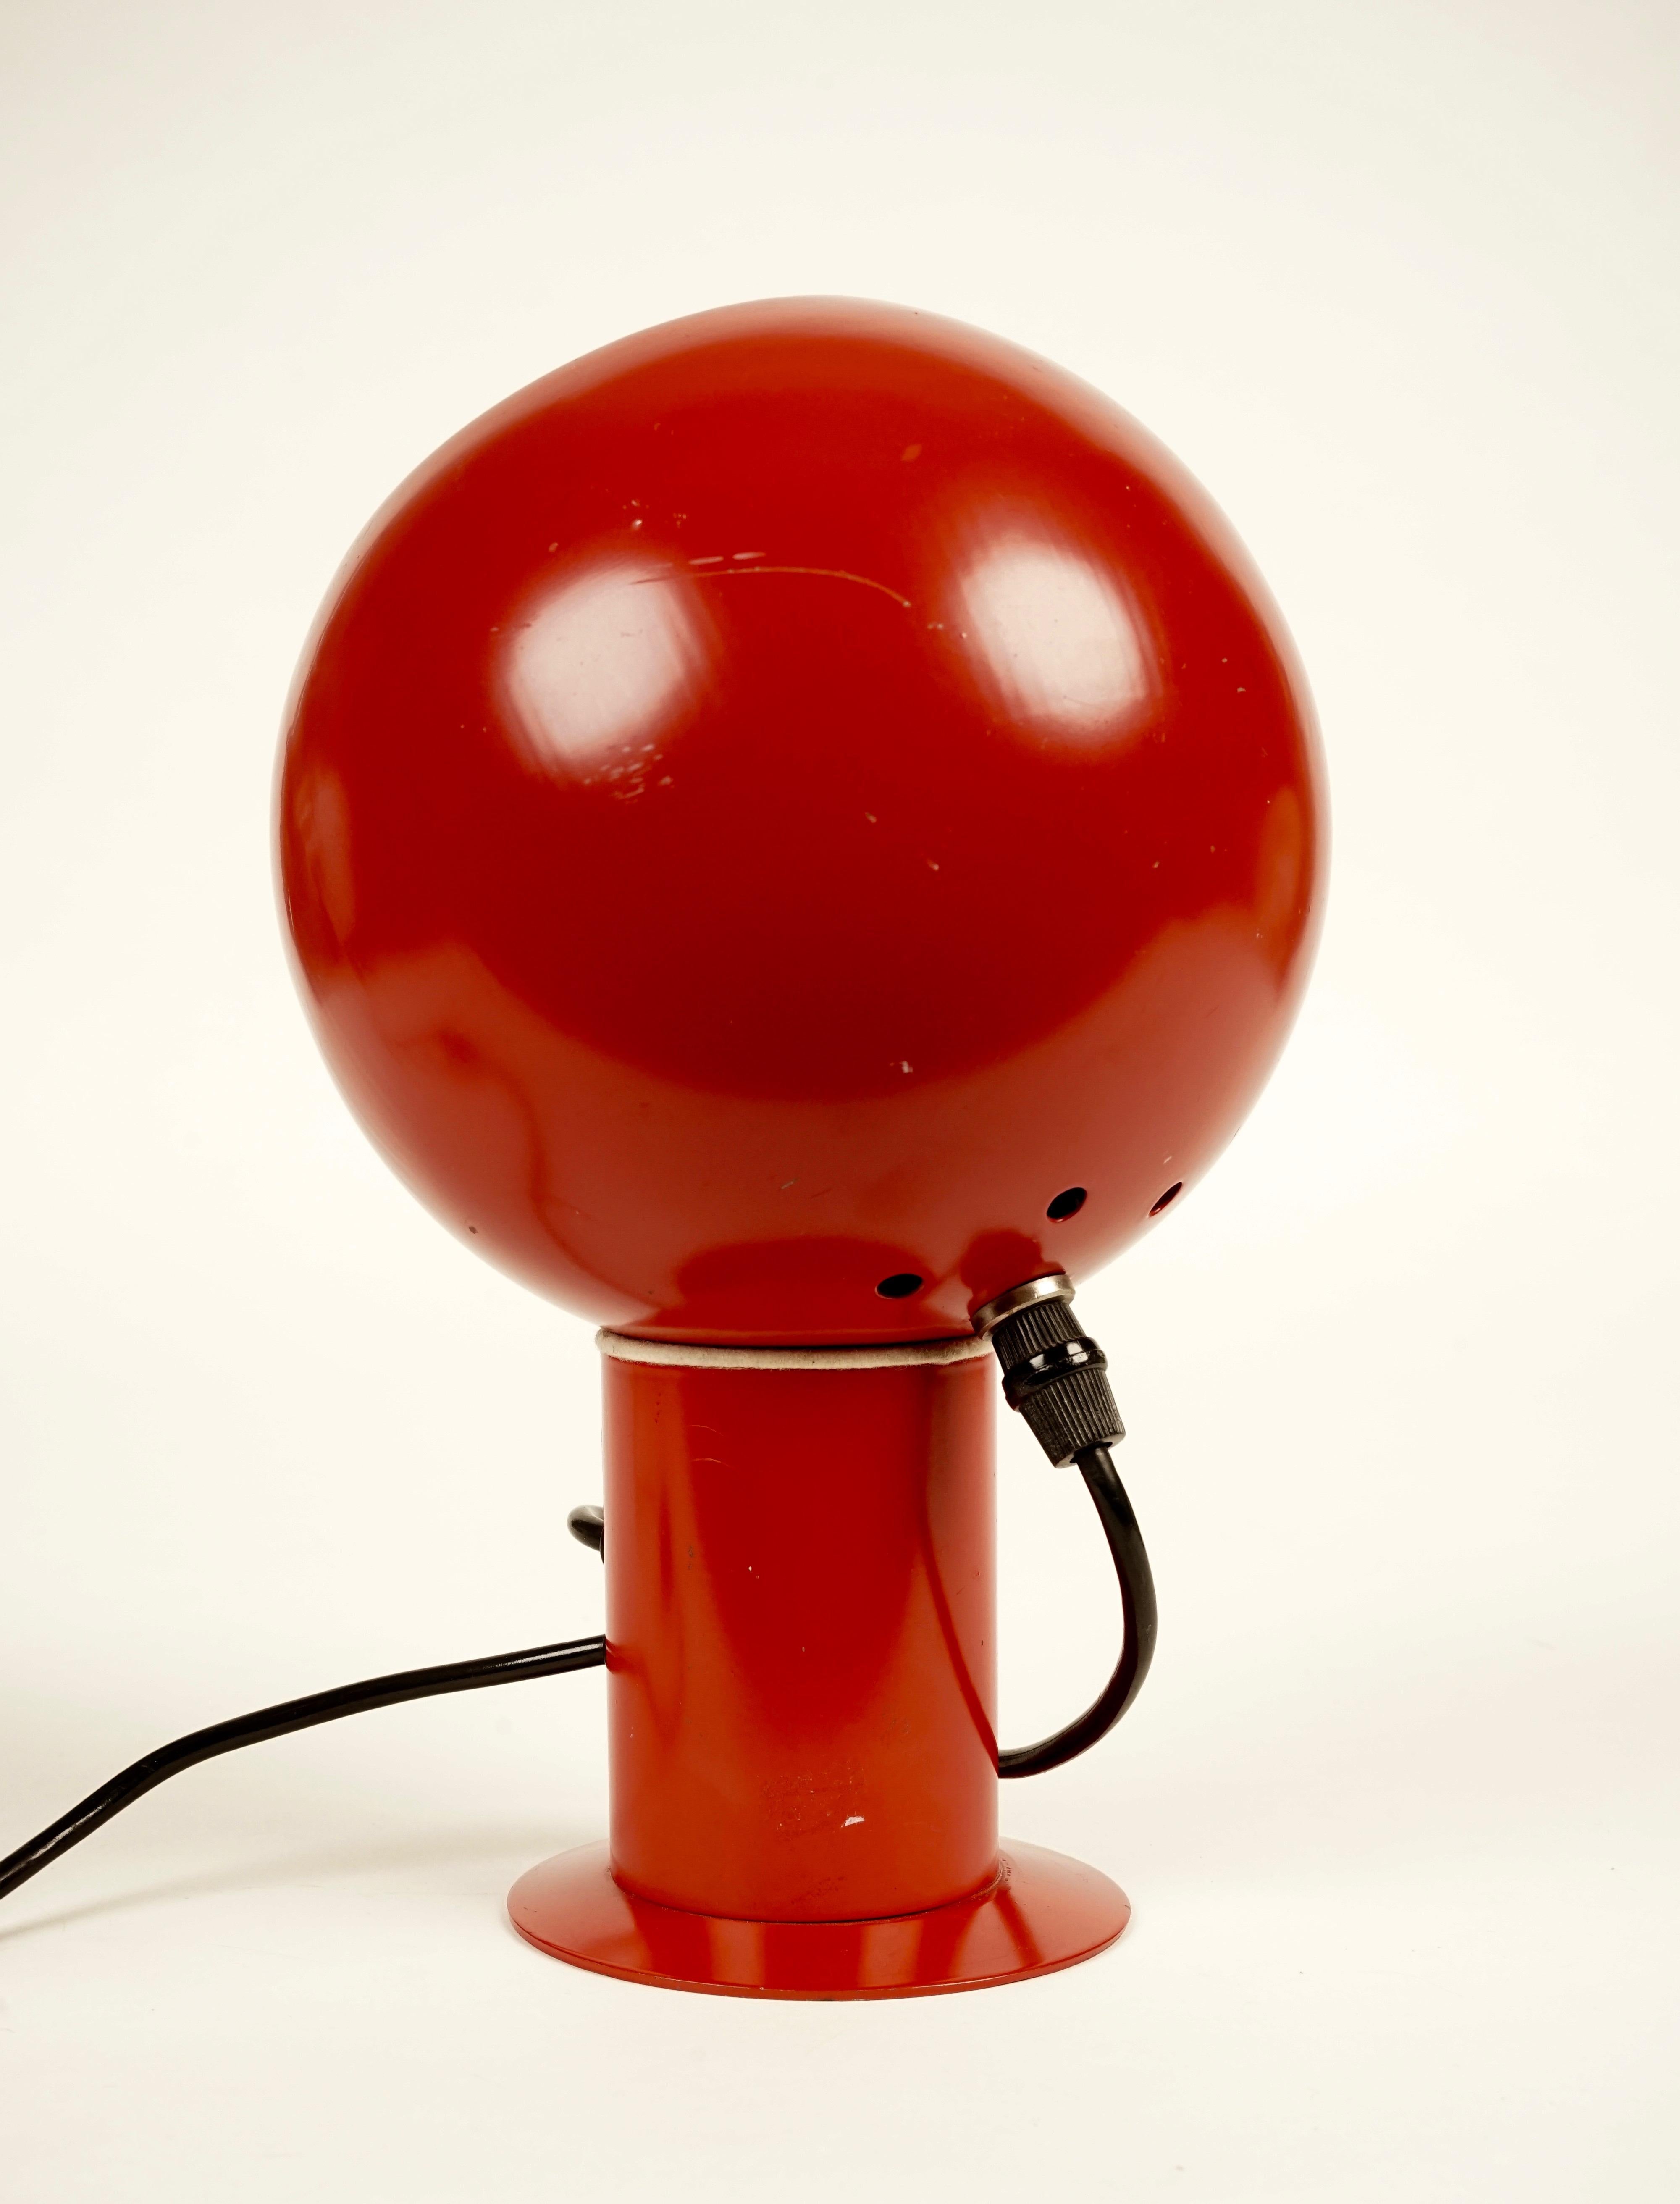 Cette lampe de table rouge à boule réglable est maintenue avec la base par un aimant.
Le ballon peut être déplacé dans différentes positions.
Fabriqué en Allemagne dans les années 1970.